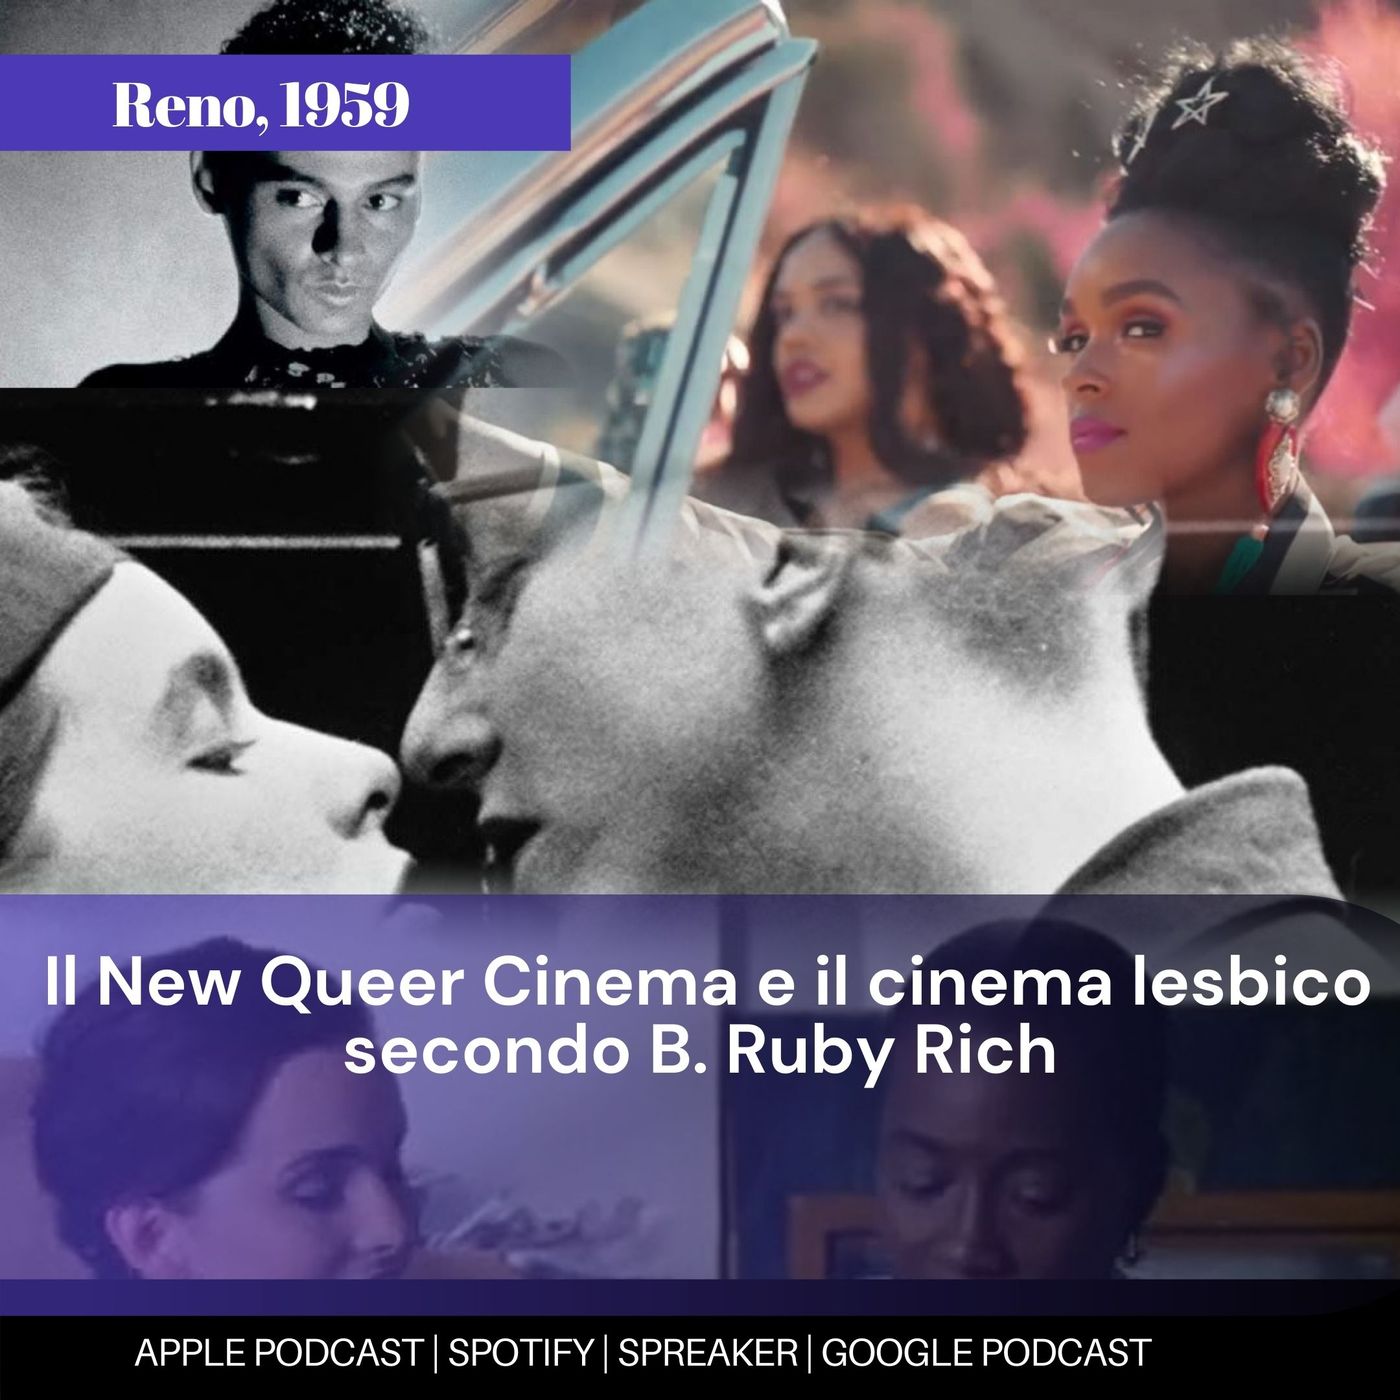 Il New Queer Cinema e il cinema lesbico secondo B. Ruby Rich